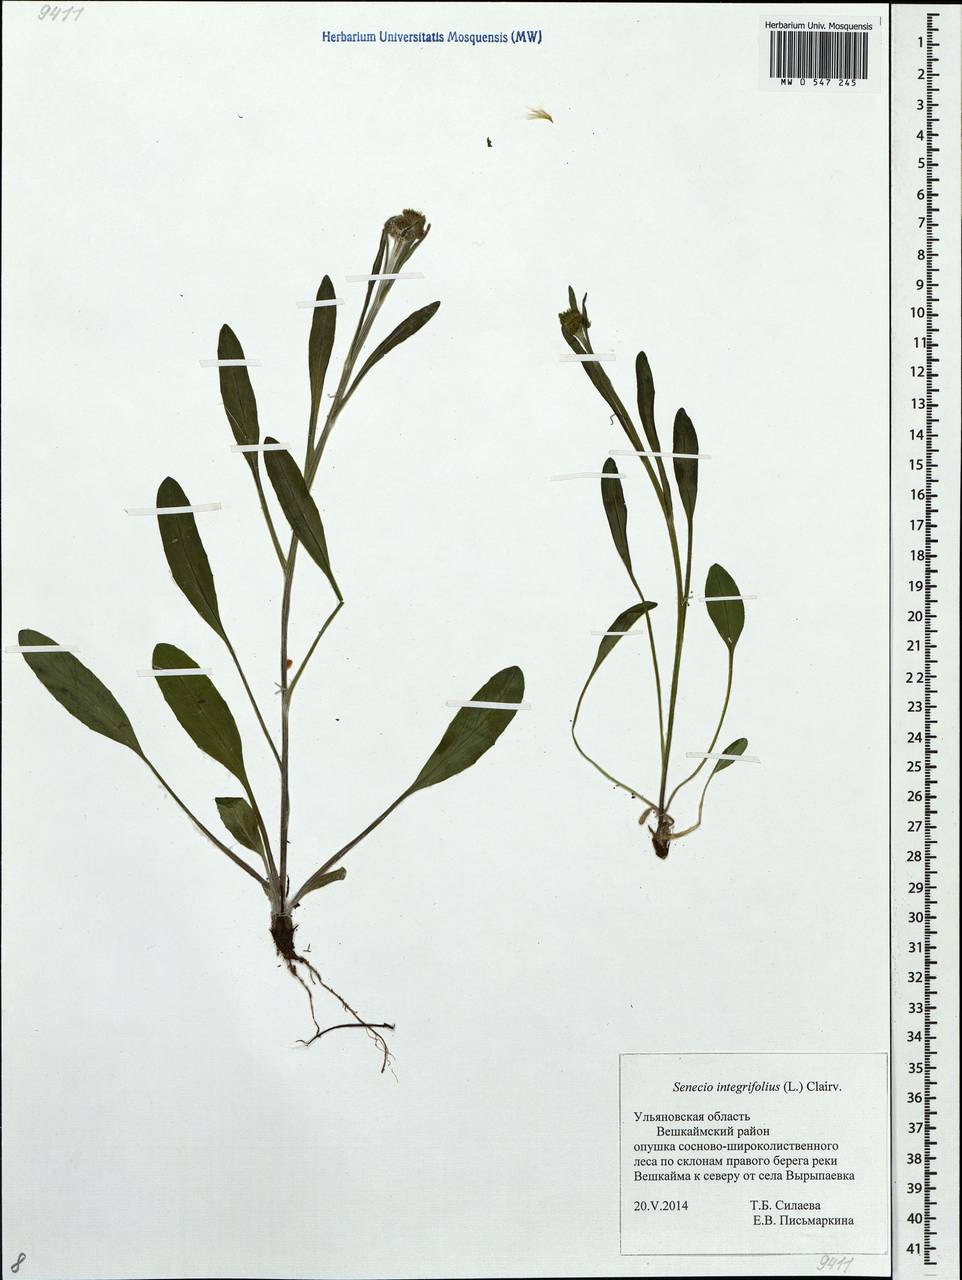 Tephroseris integrifolia (L.) Holub, Eastern Europe, Middle Volga region (E8) (Russia)